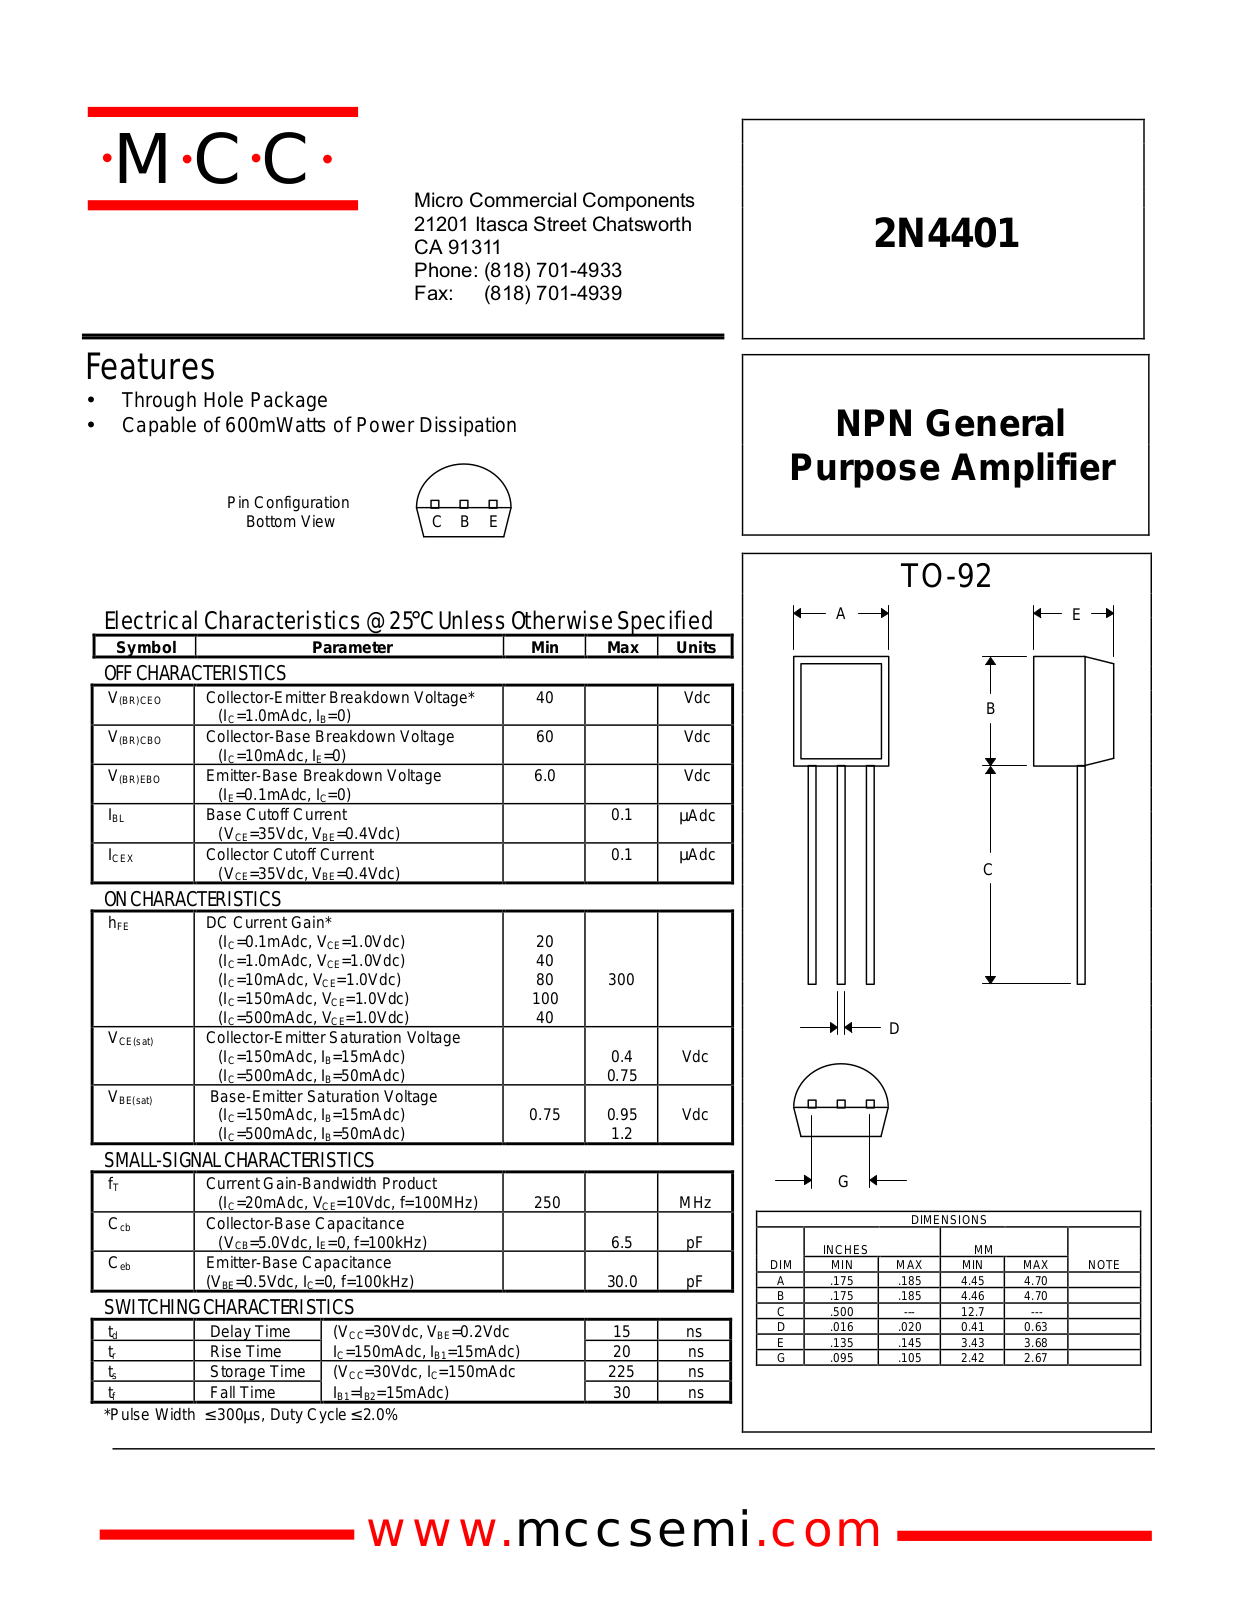 MCC 2N4401 Datasheet